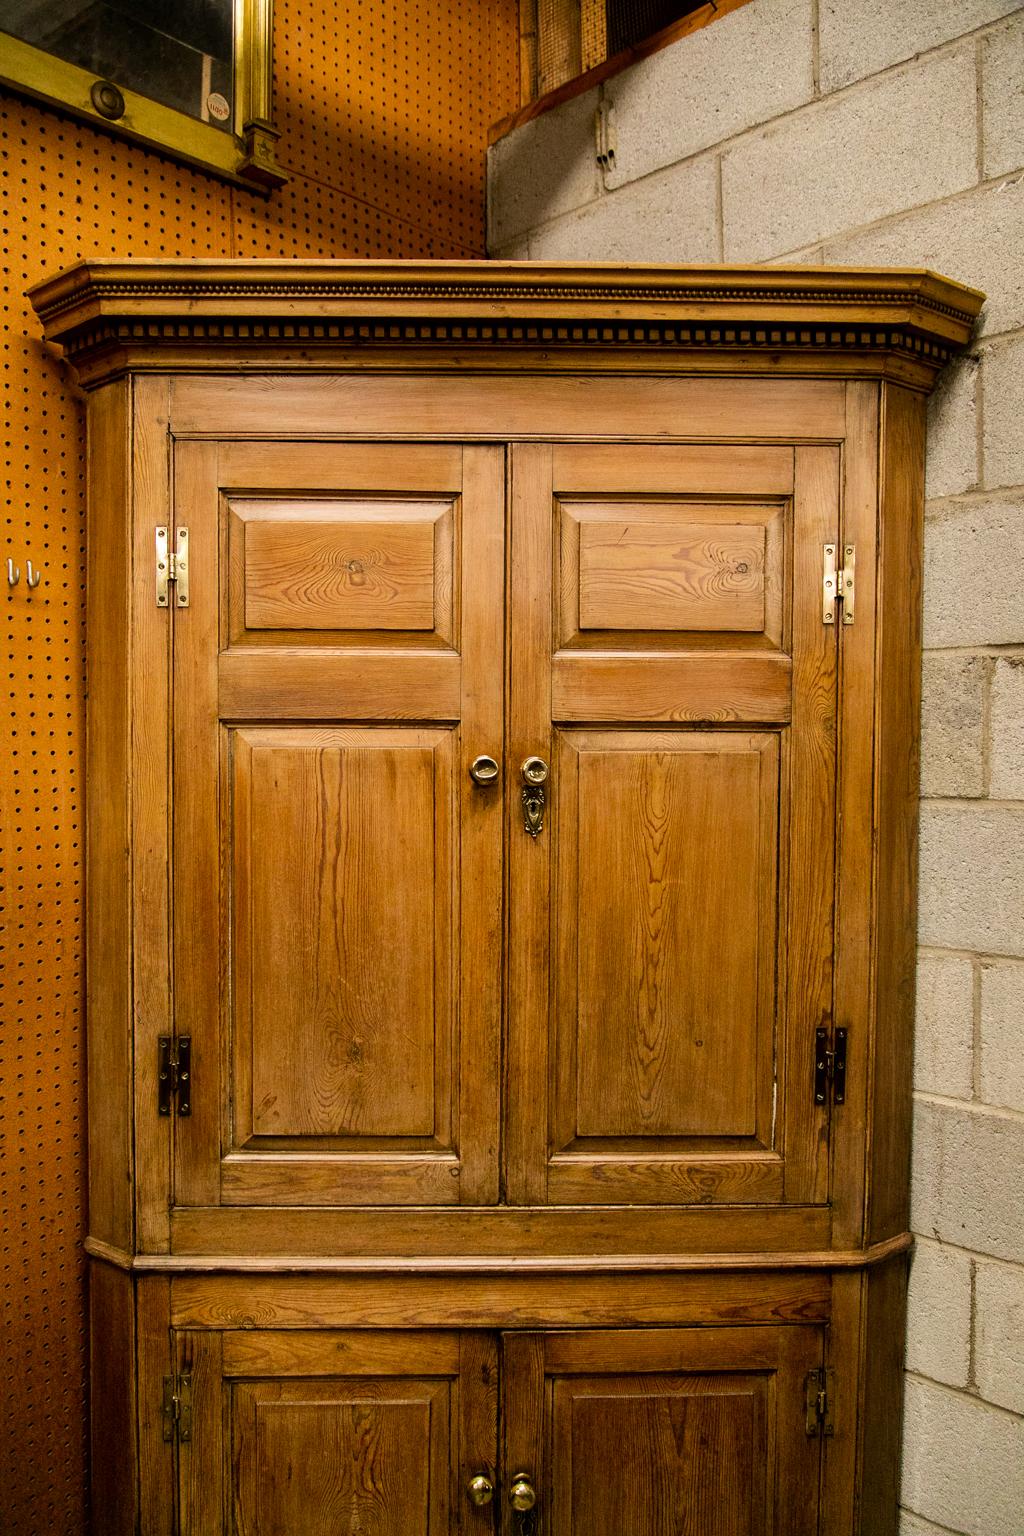 La corniche de cette armoire d'angle est ornée d'un denticule et d'une moulure à perles répétitives. Les portes du haut et du bas ont des panneaux en relief encadrés par des moulures en forme. L'intérieur a été peint ultérieurement.